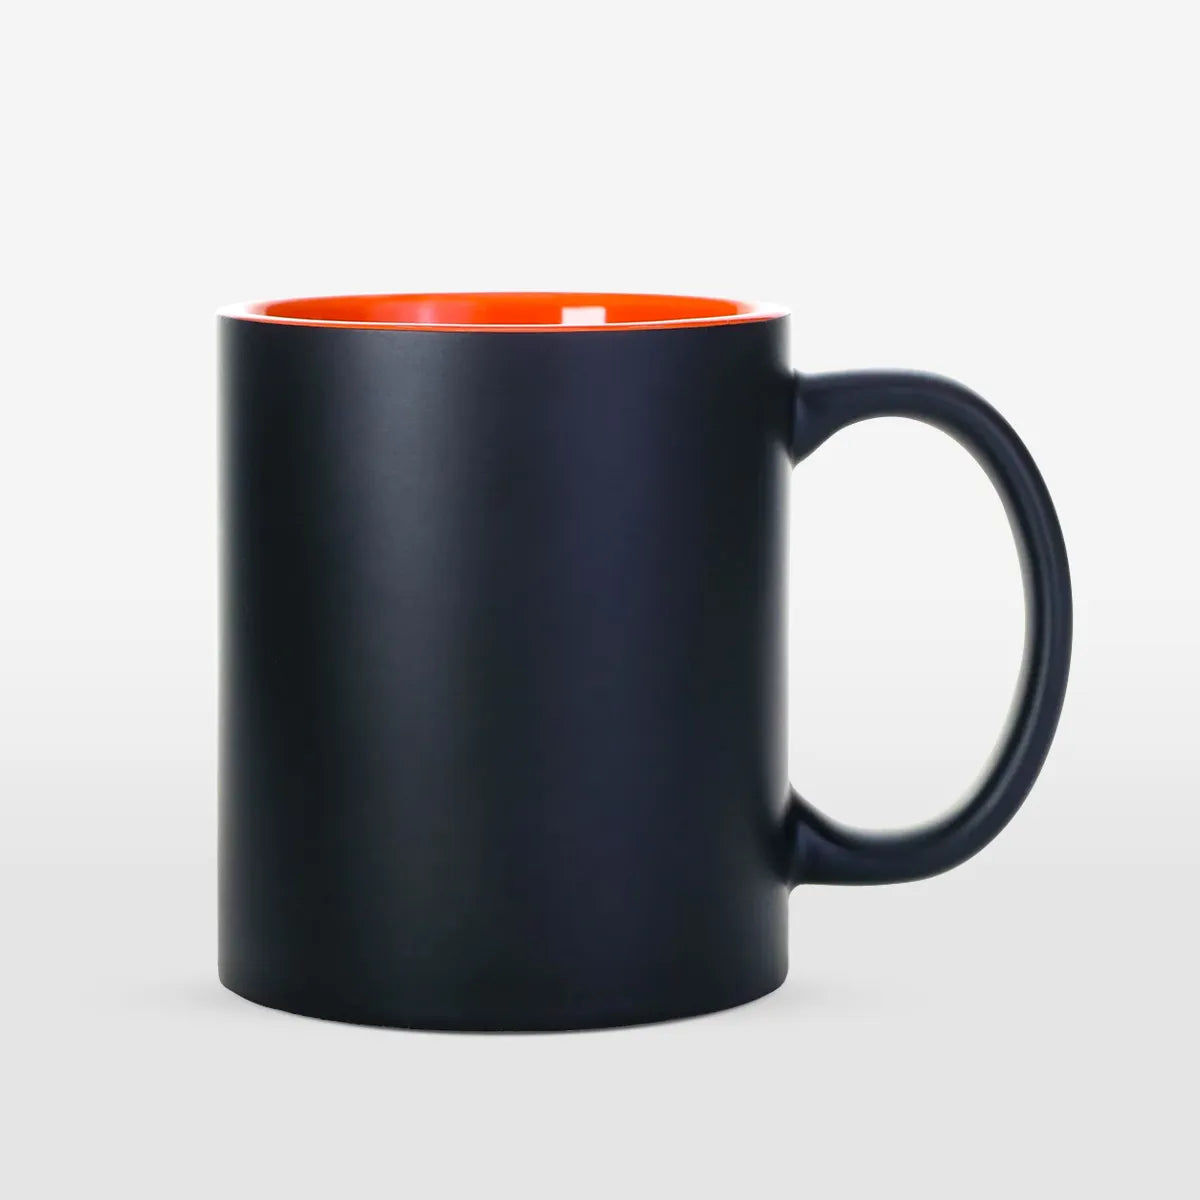 https://shop.ricoma.com/cdn/shop/files/11oz_black_color_changing_mug_orange_1.webp?v=1701277709